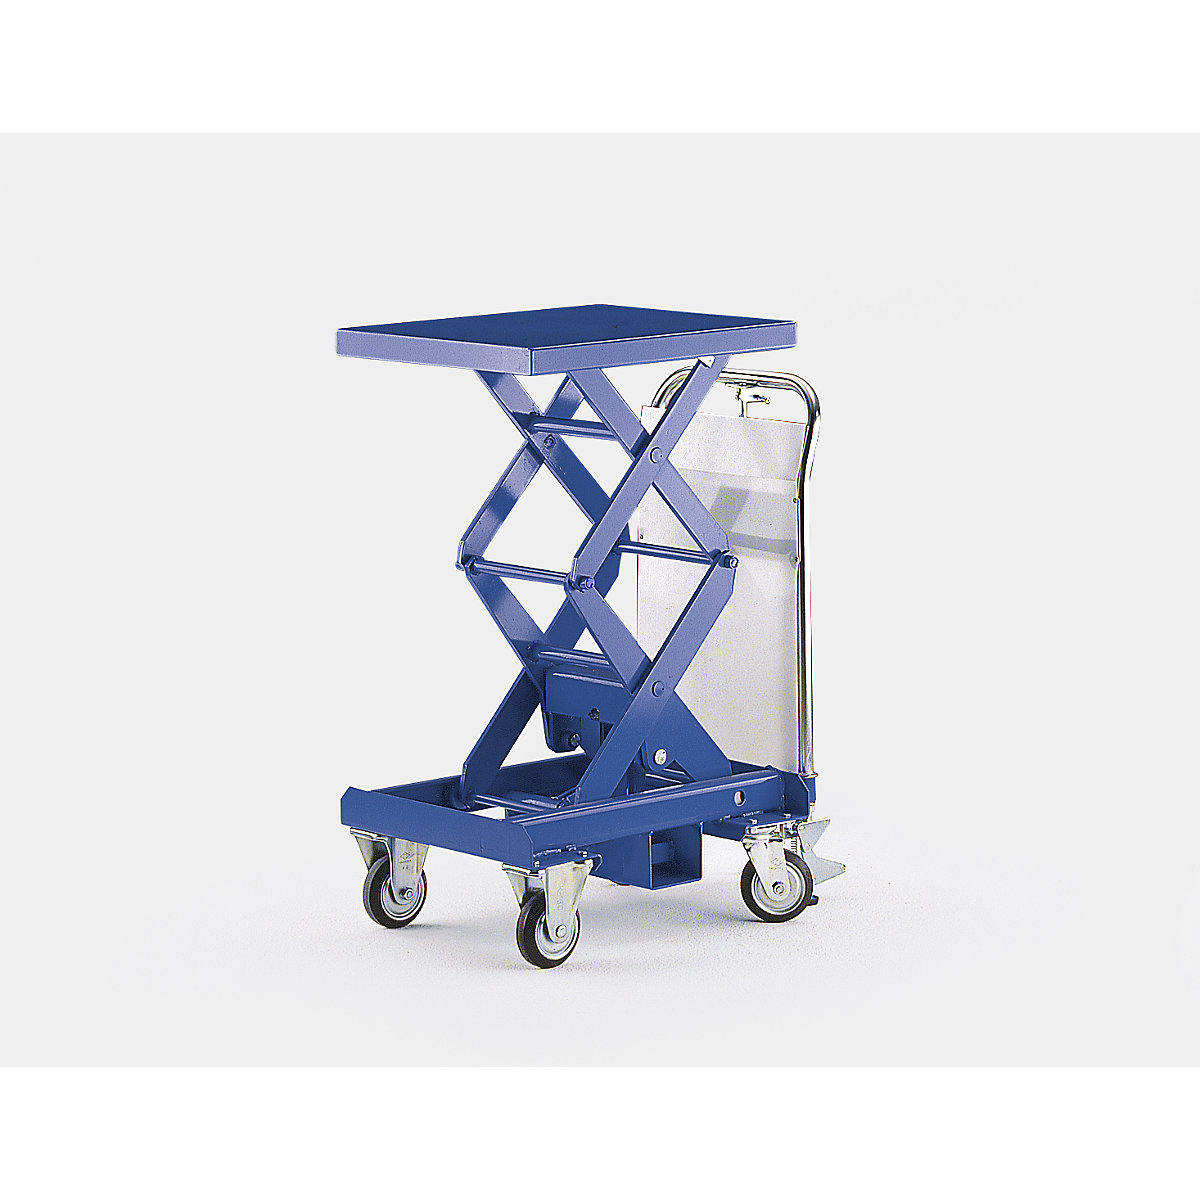 Dwunożycowy podnośny wózek stołowy, niebieski gencjanowy